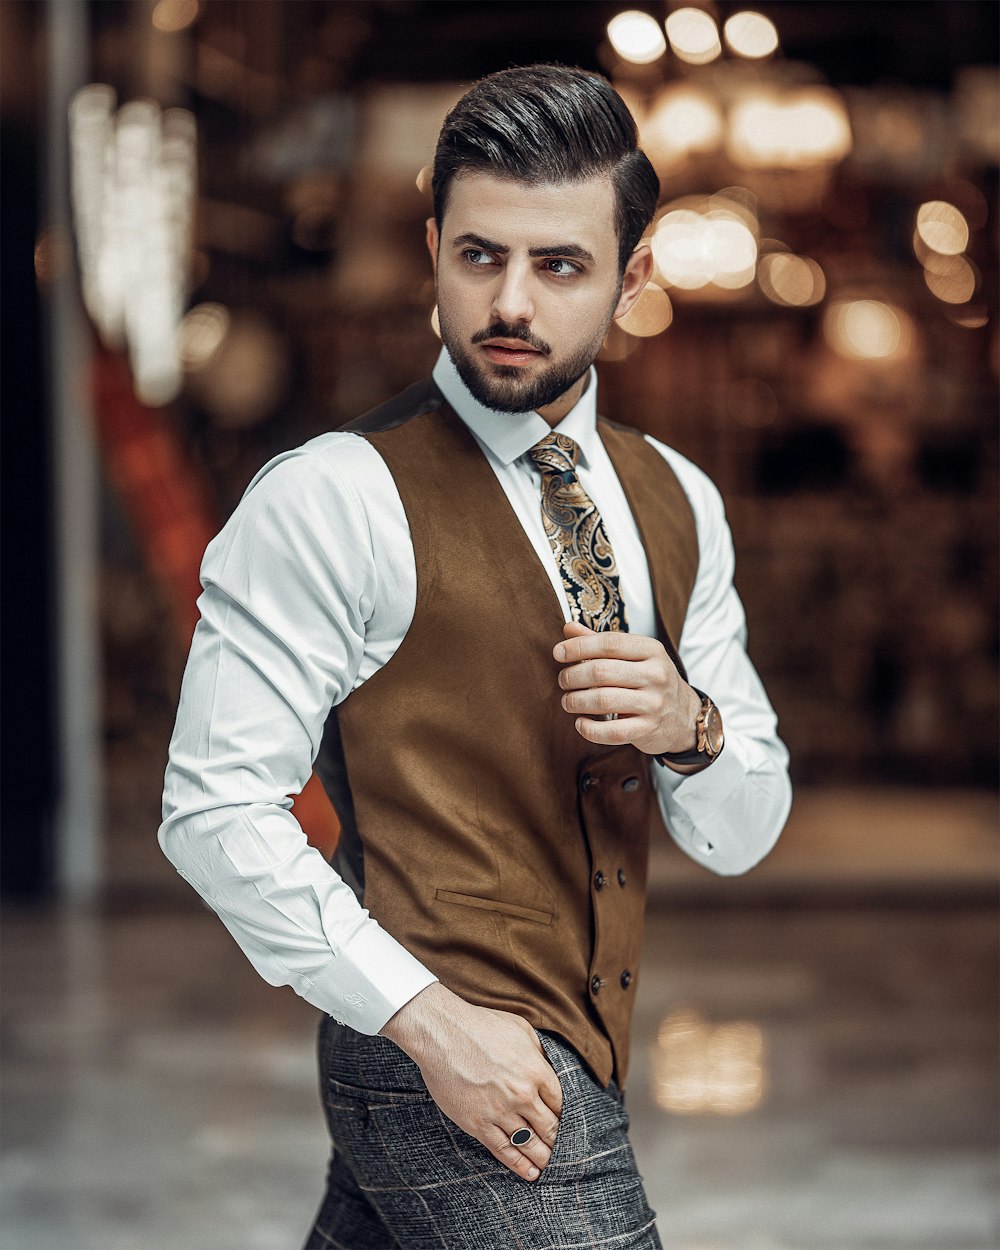 Un homme en gilet et cravate pose pour une photo